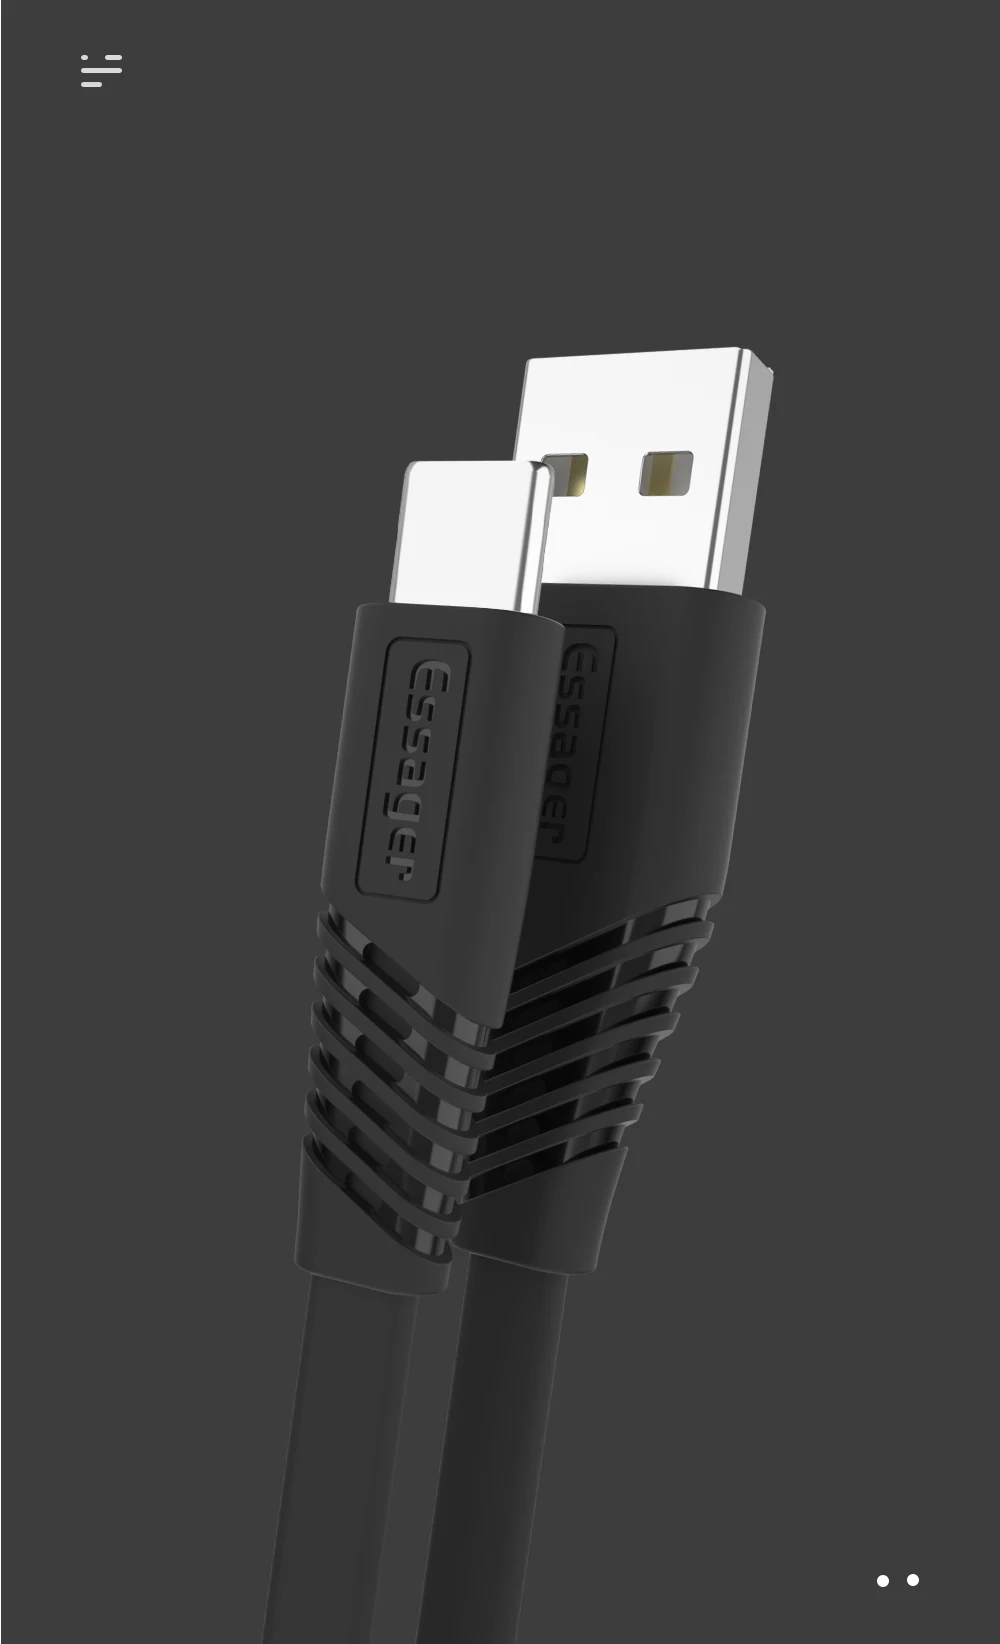 Плоский кабель Essager usb type-C для samsung Xiaomi huawei, 1 м, 2 м, кабель для синхронизации данных и зарядного устройства, кабель usb type-C, кабель USBC A, быстрая зарядка